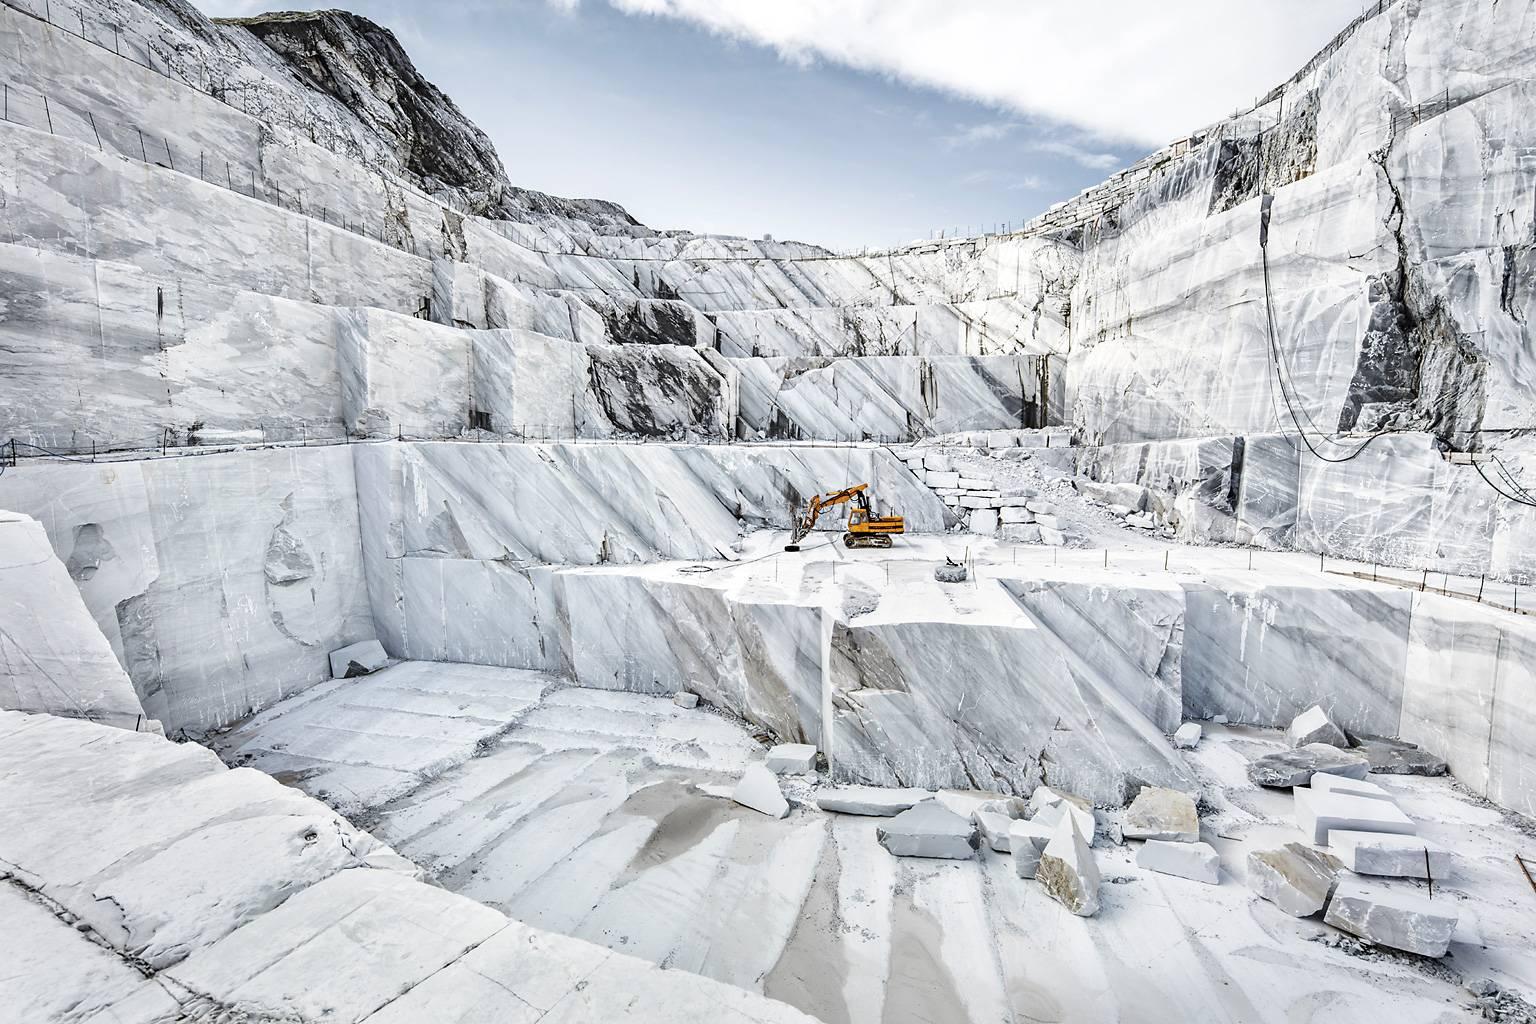 Landscape Photograph Frank Schott - Marmo di Carrara - photographie grand format de la célèbre carrière de marbre italienne